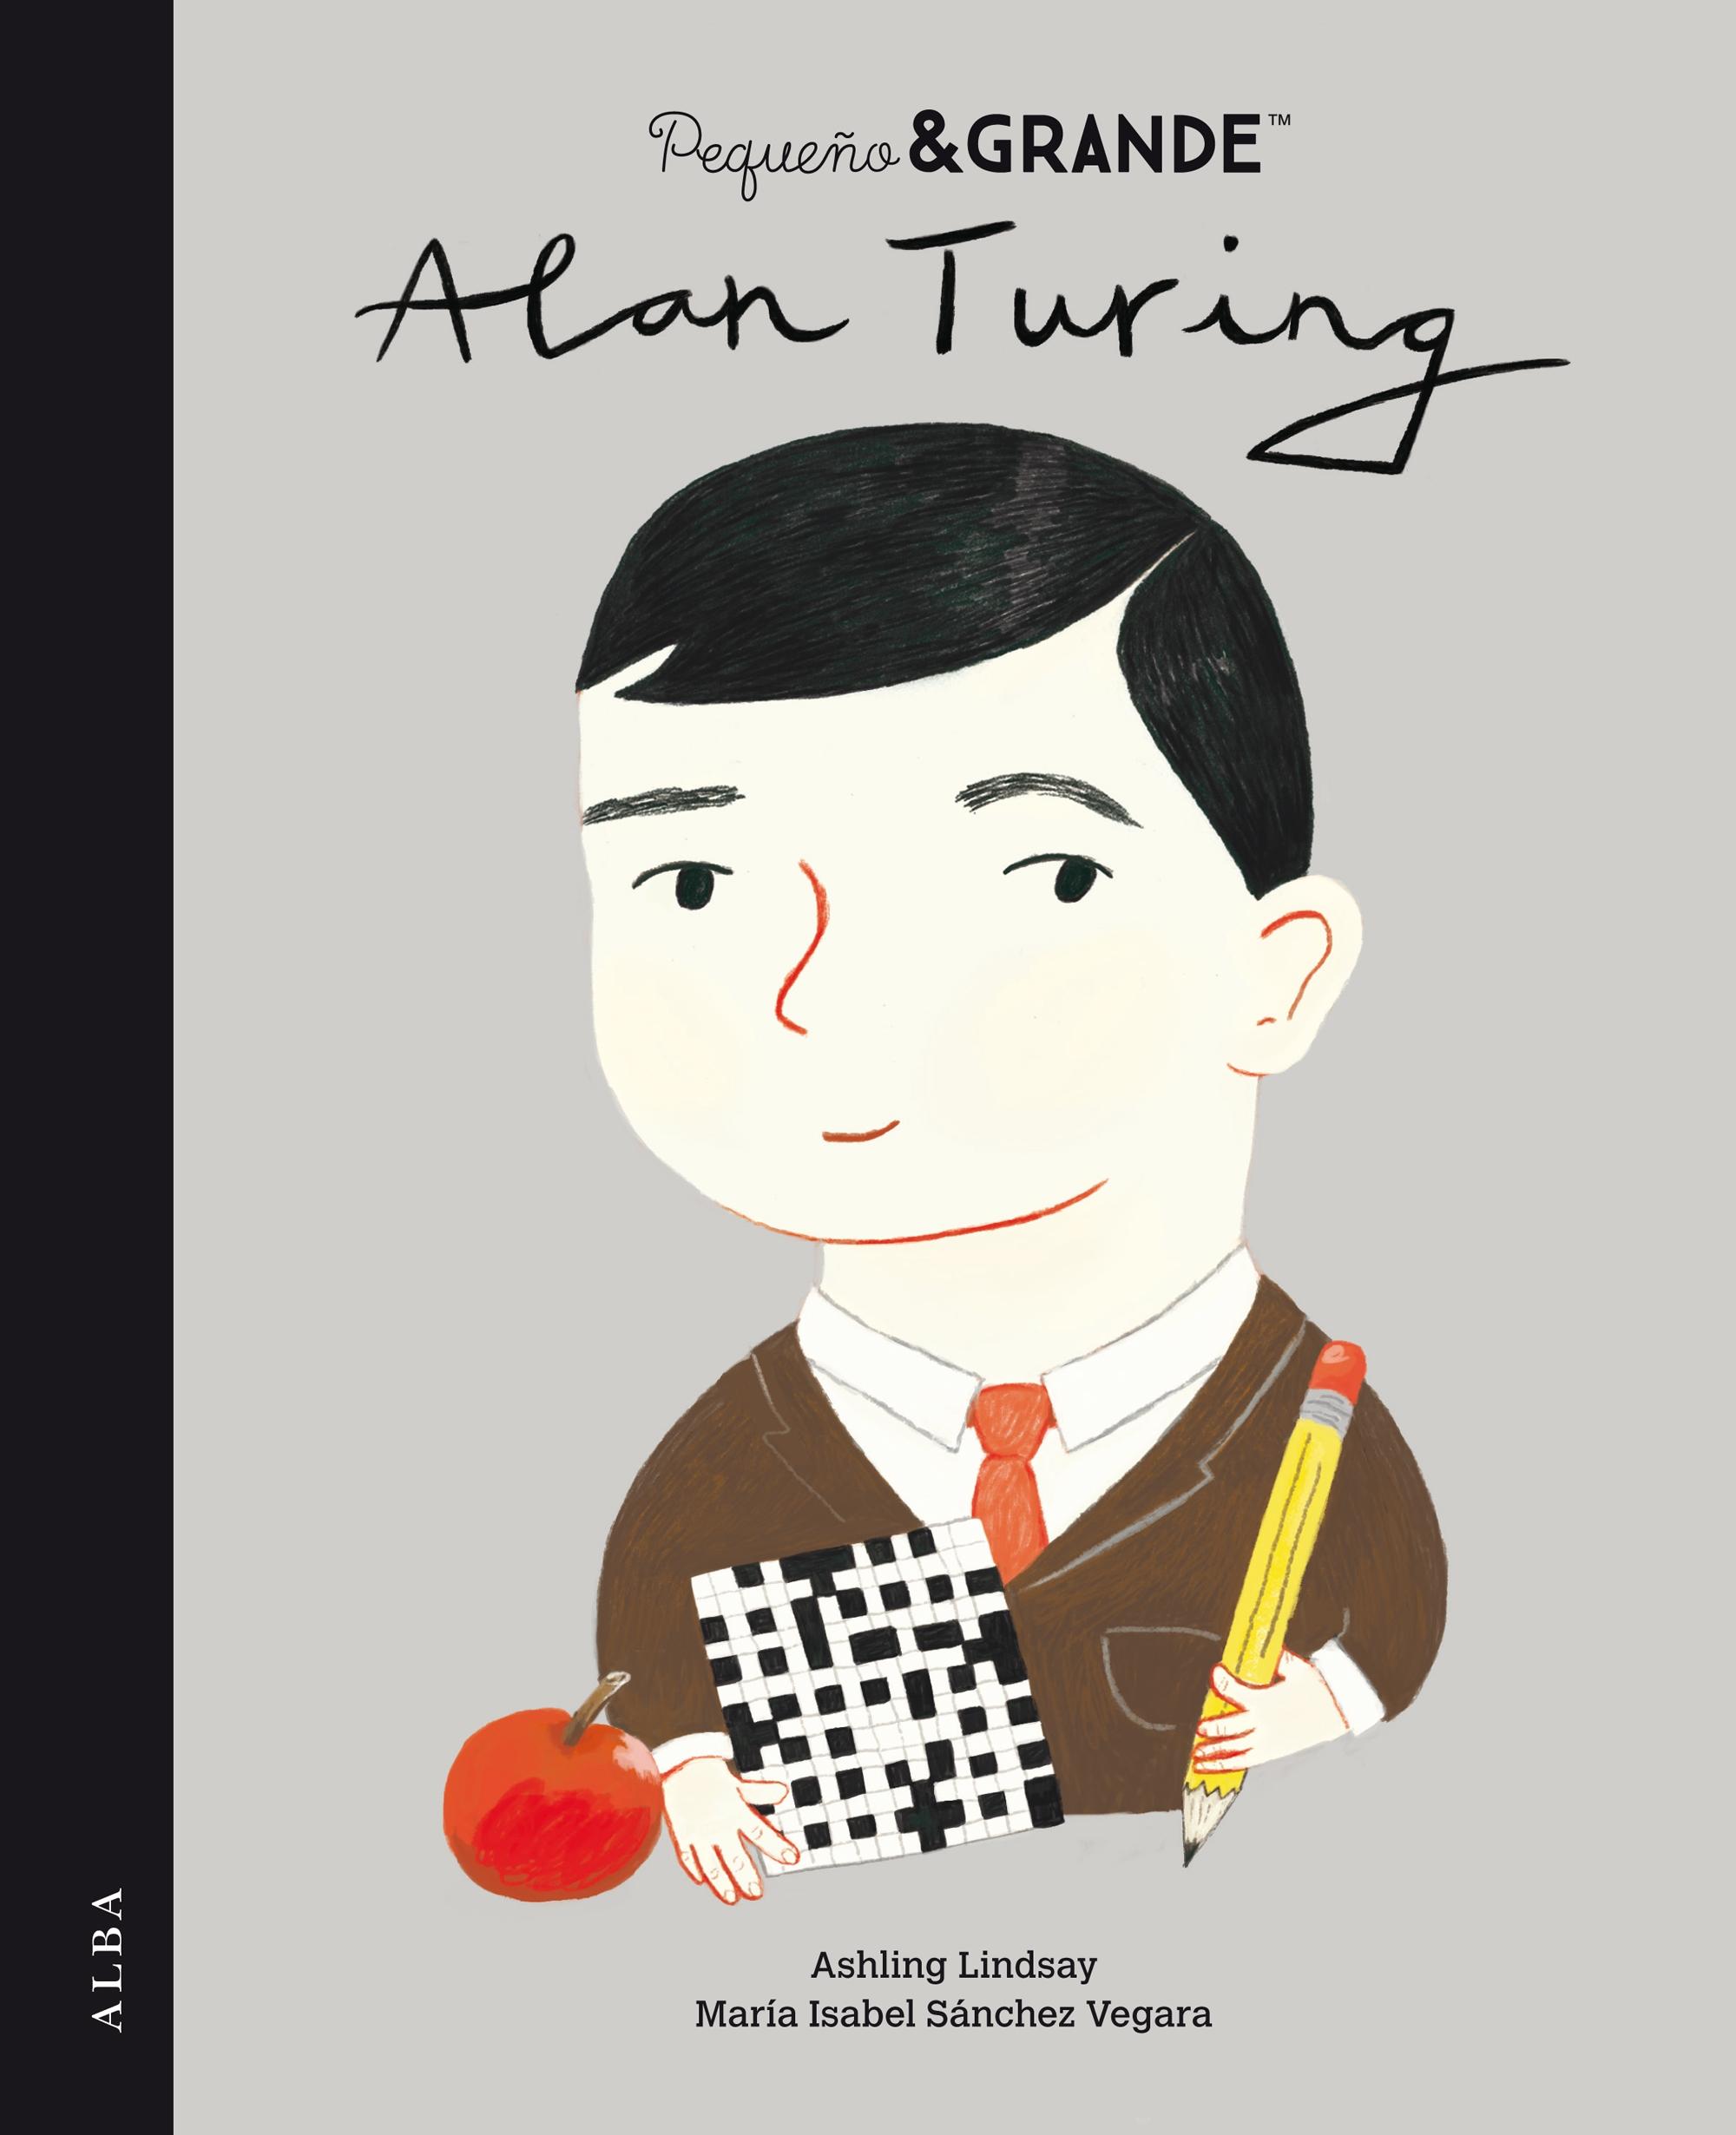  Alan Turing  Pequeño & Grande. 